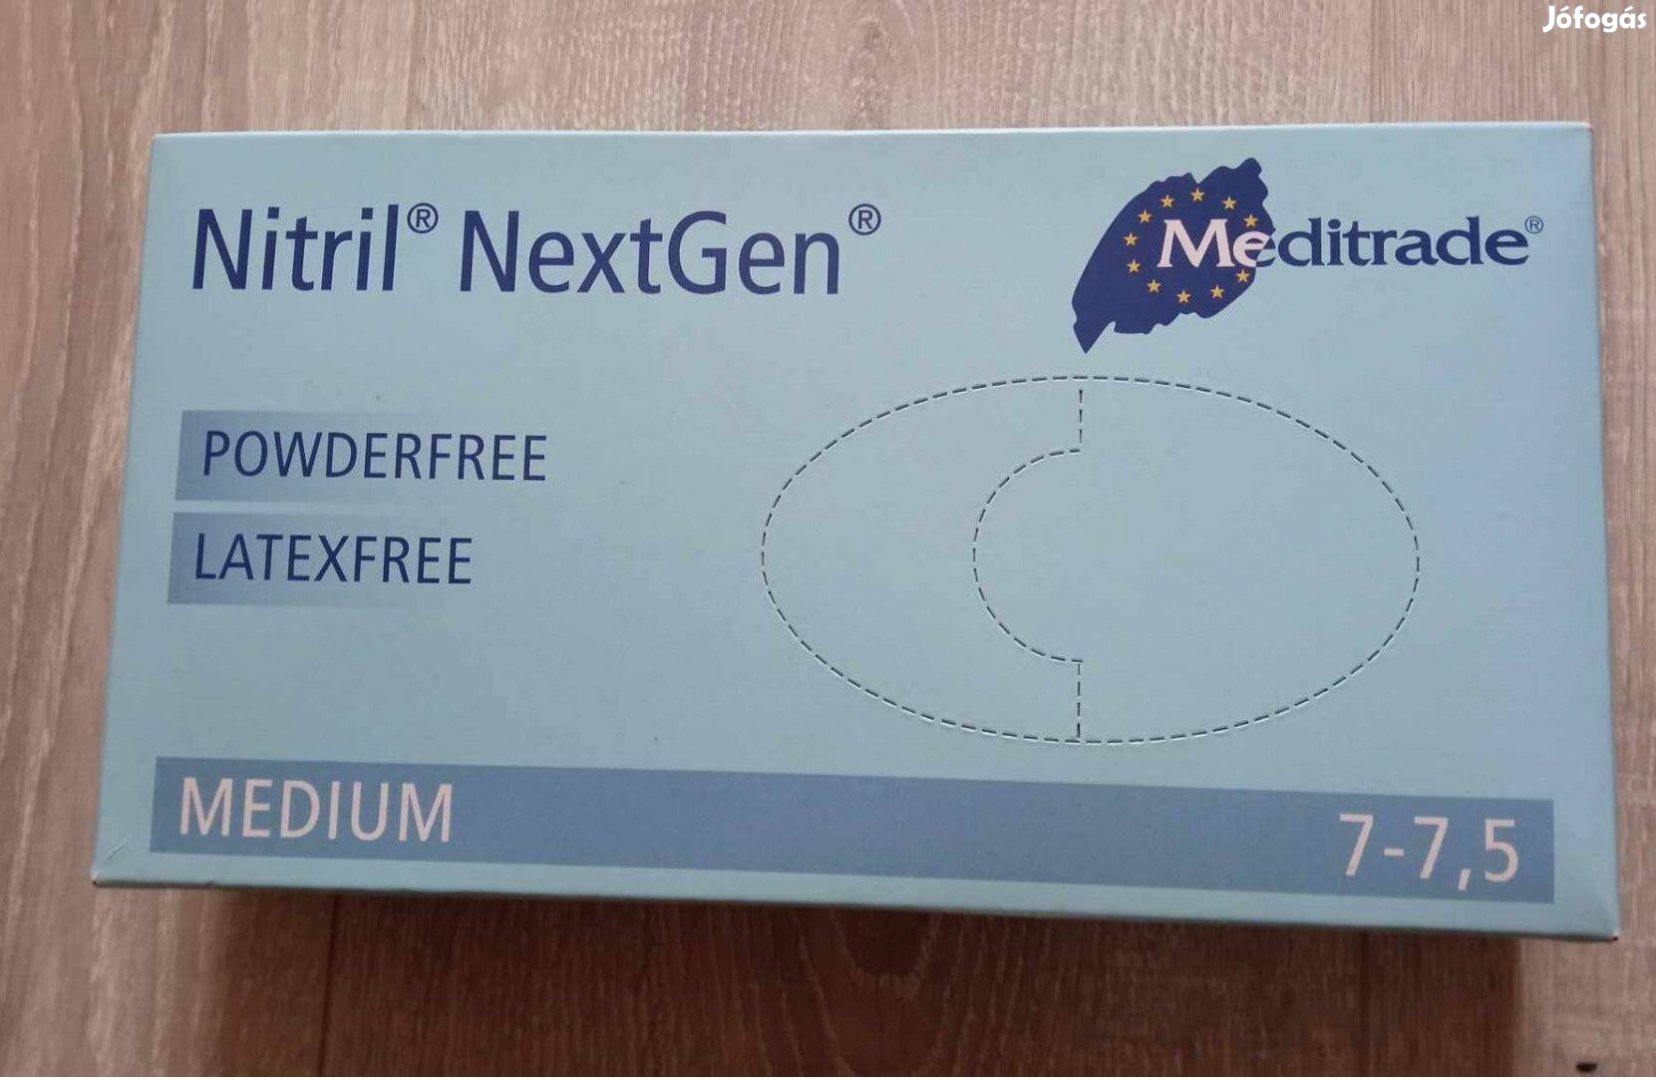 Nitril medium gumikesztyű latexfree 7-7.5 új bontatlan 100 db